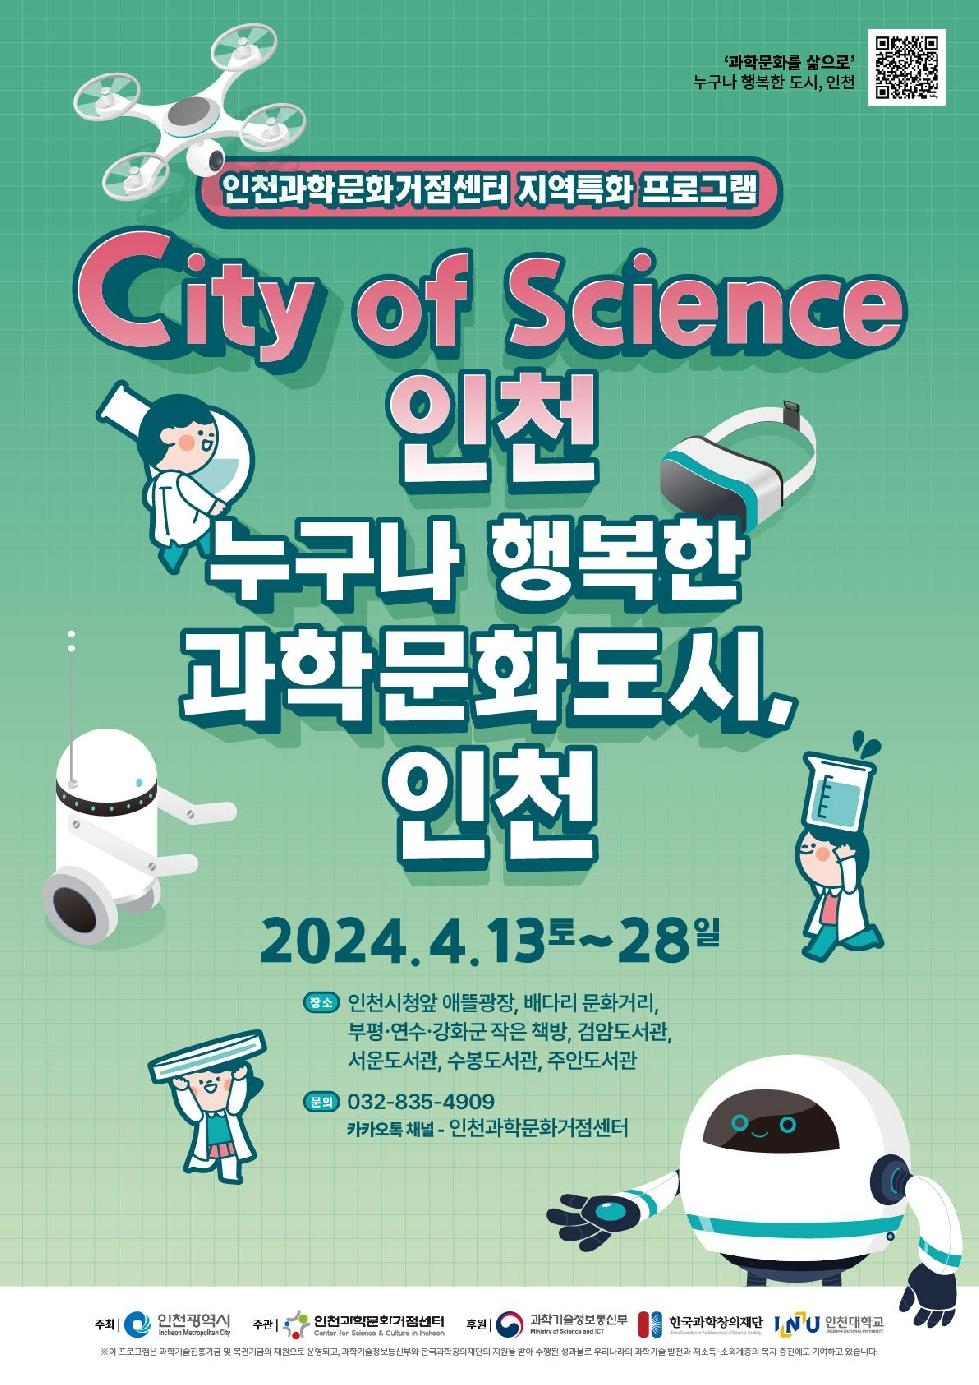 인천시 과학의 날 맞아, 인천 곳곳에서 펼쳐지는 과학문화 축제